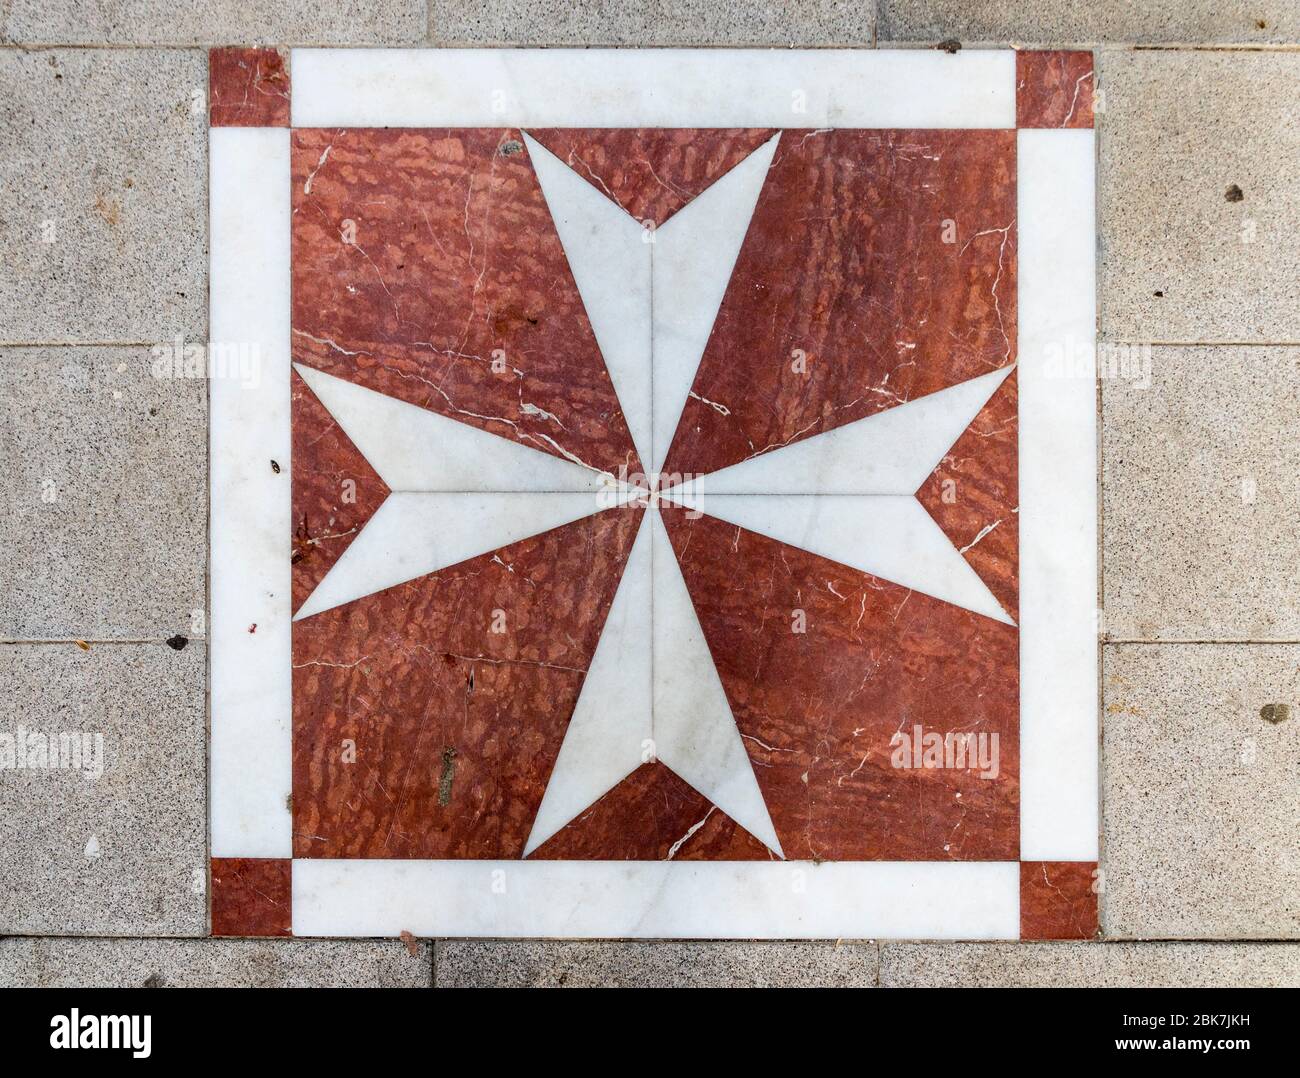 Lora del Río, España. Mosaico en el suelo con la Cruz de San Juan, emblema de la Soberana Orden Militar de Malta, en esta ciudad de Andalucía Foto de stock